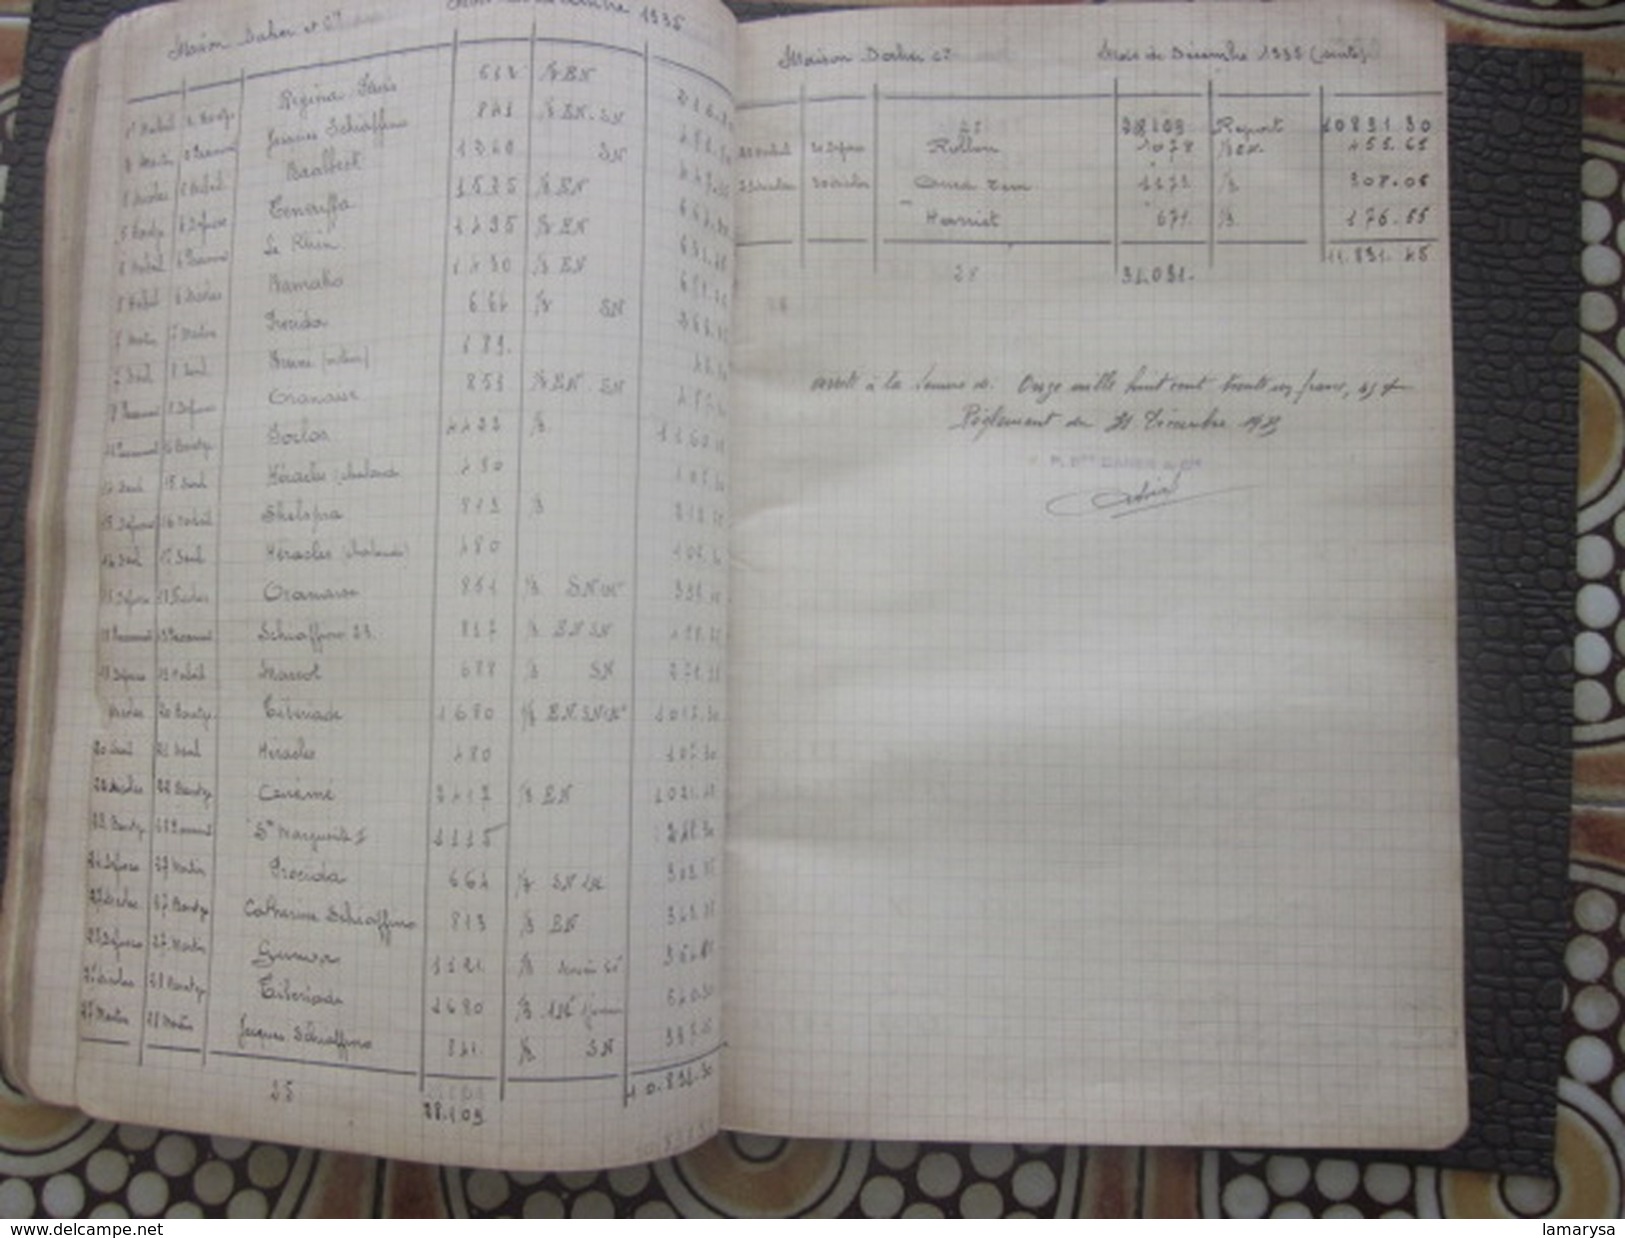 Pilotage Port-Saint-Louis-du-Rhone Relevé Factures 1935-36 Compagnie Maritime Noms Navires Dates-Bill of Lading-Registre